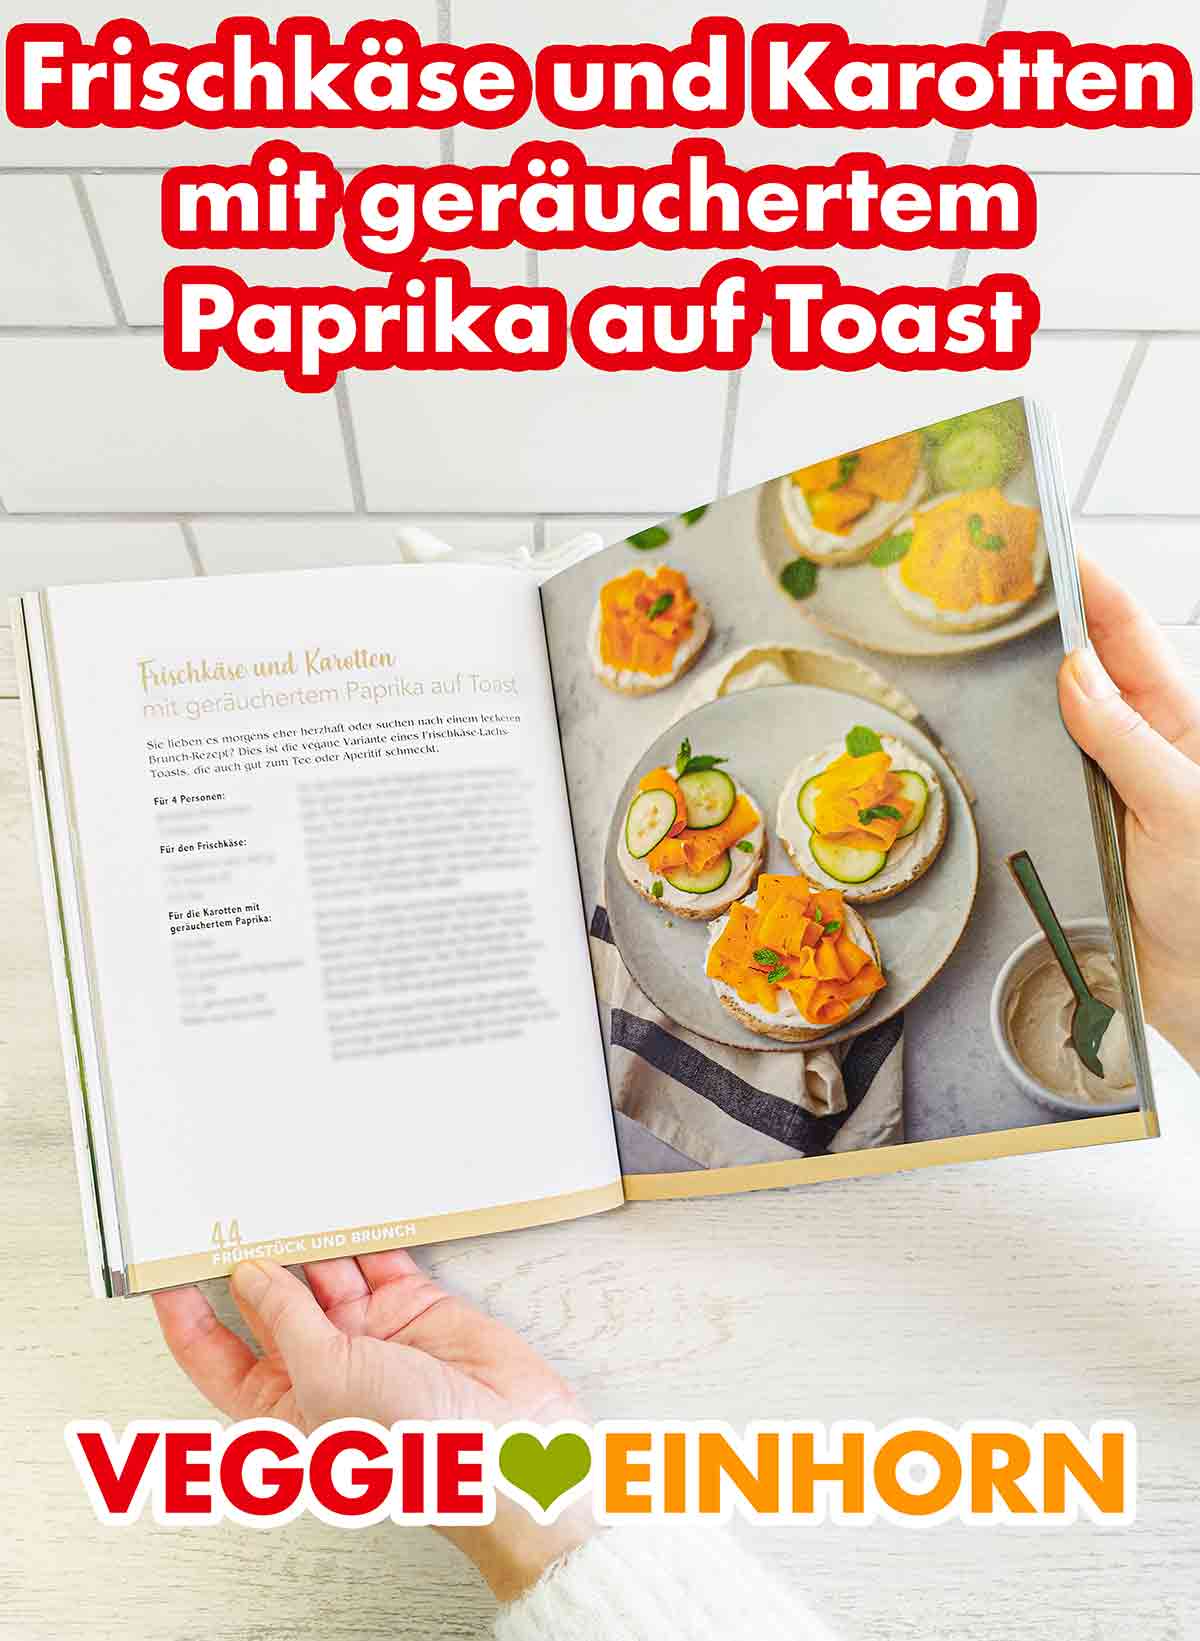 Frischkäse und Karotten mit geräuchertem Paprika auf Toast im Kochbuch Vegan und Günstig